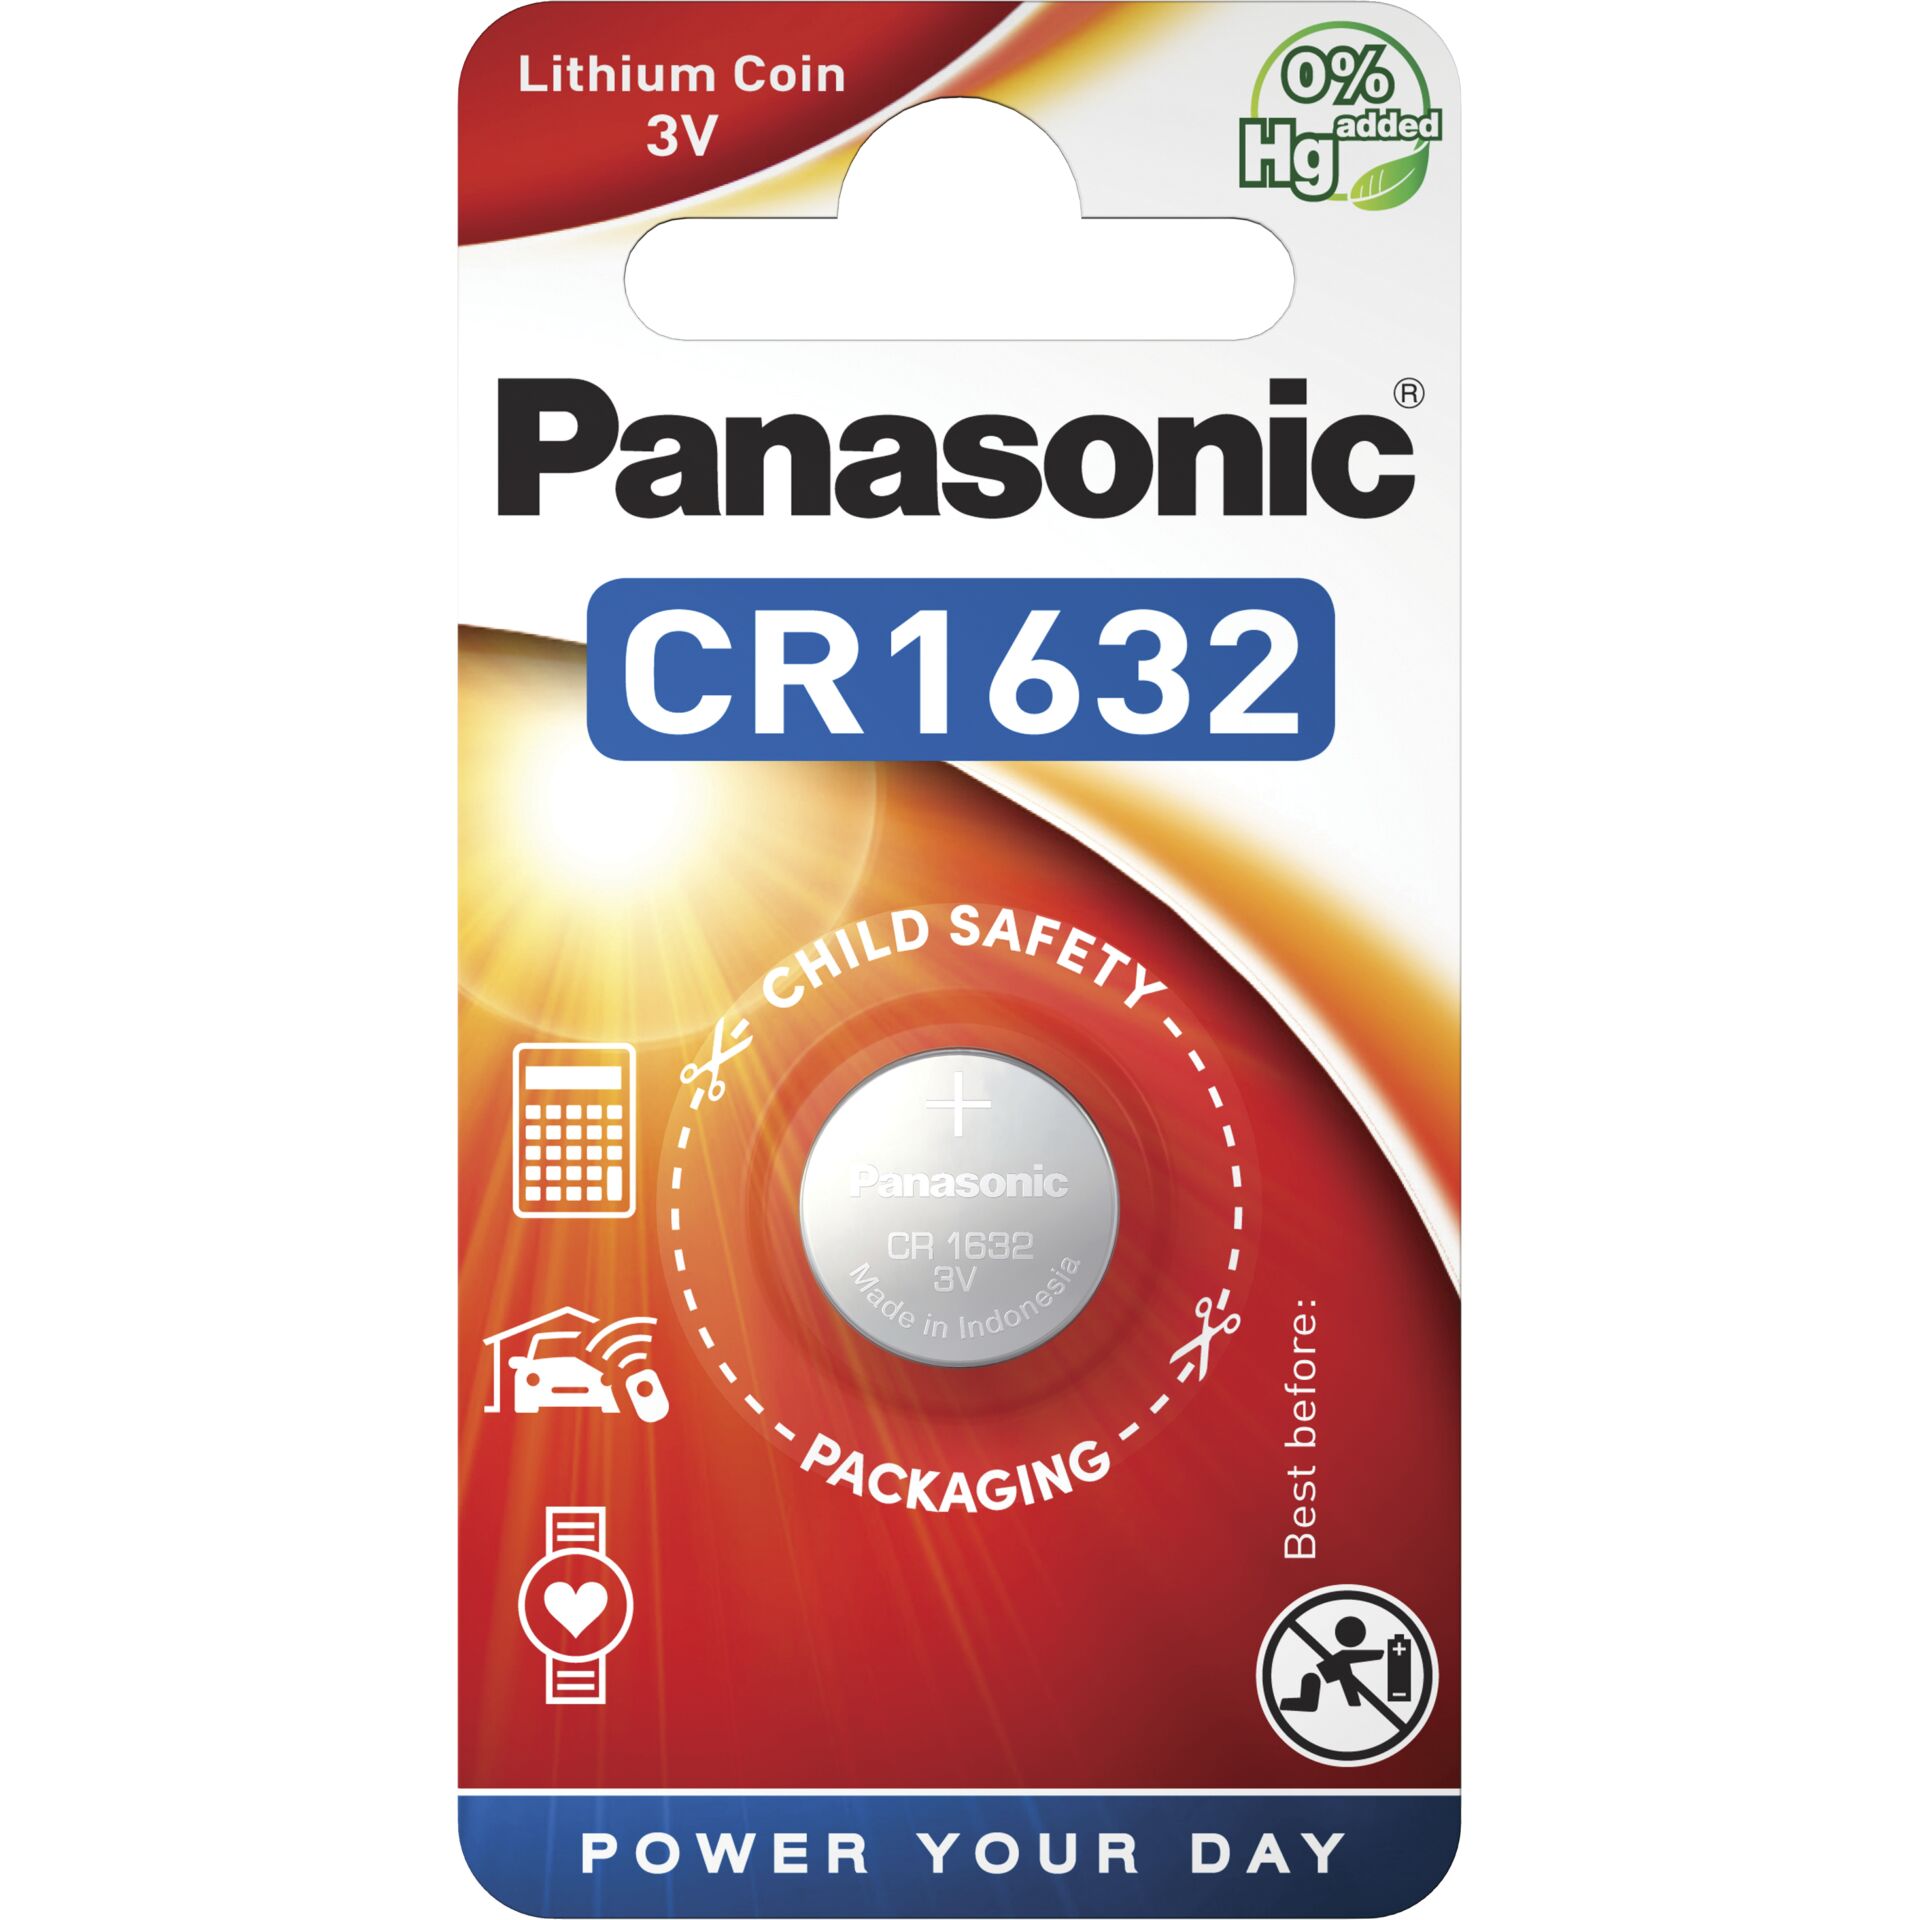 LR Pro 1x24 Power Panasonic AAA 03 Micro